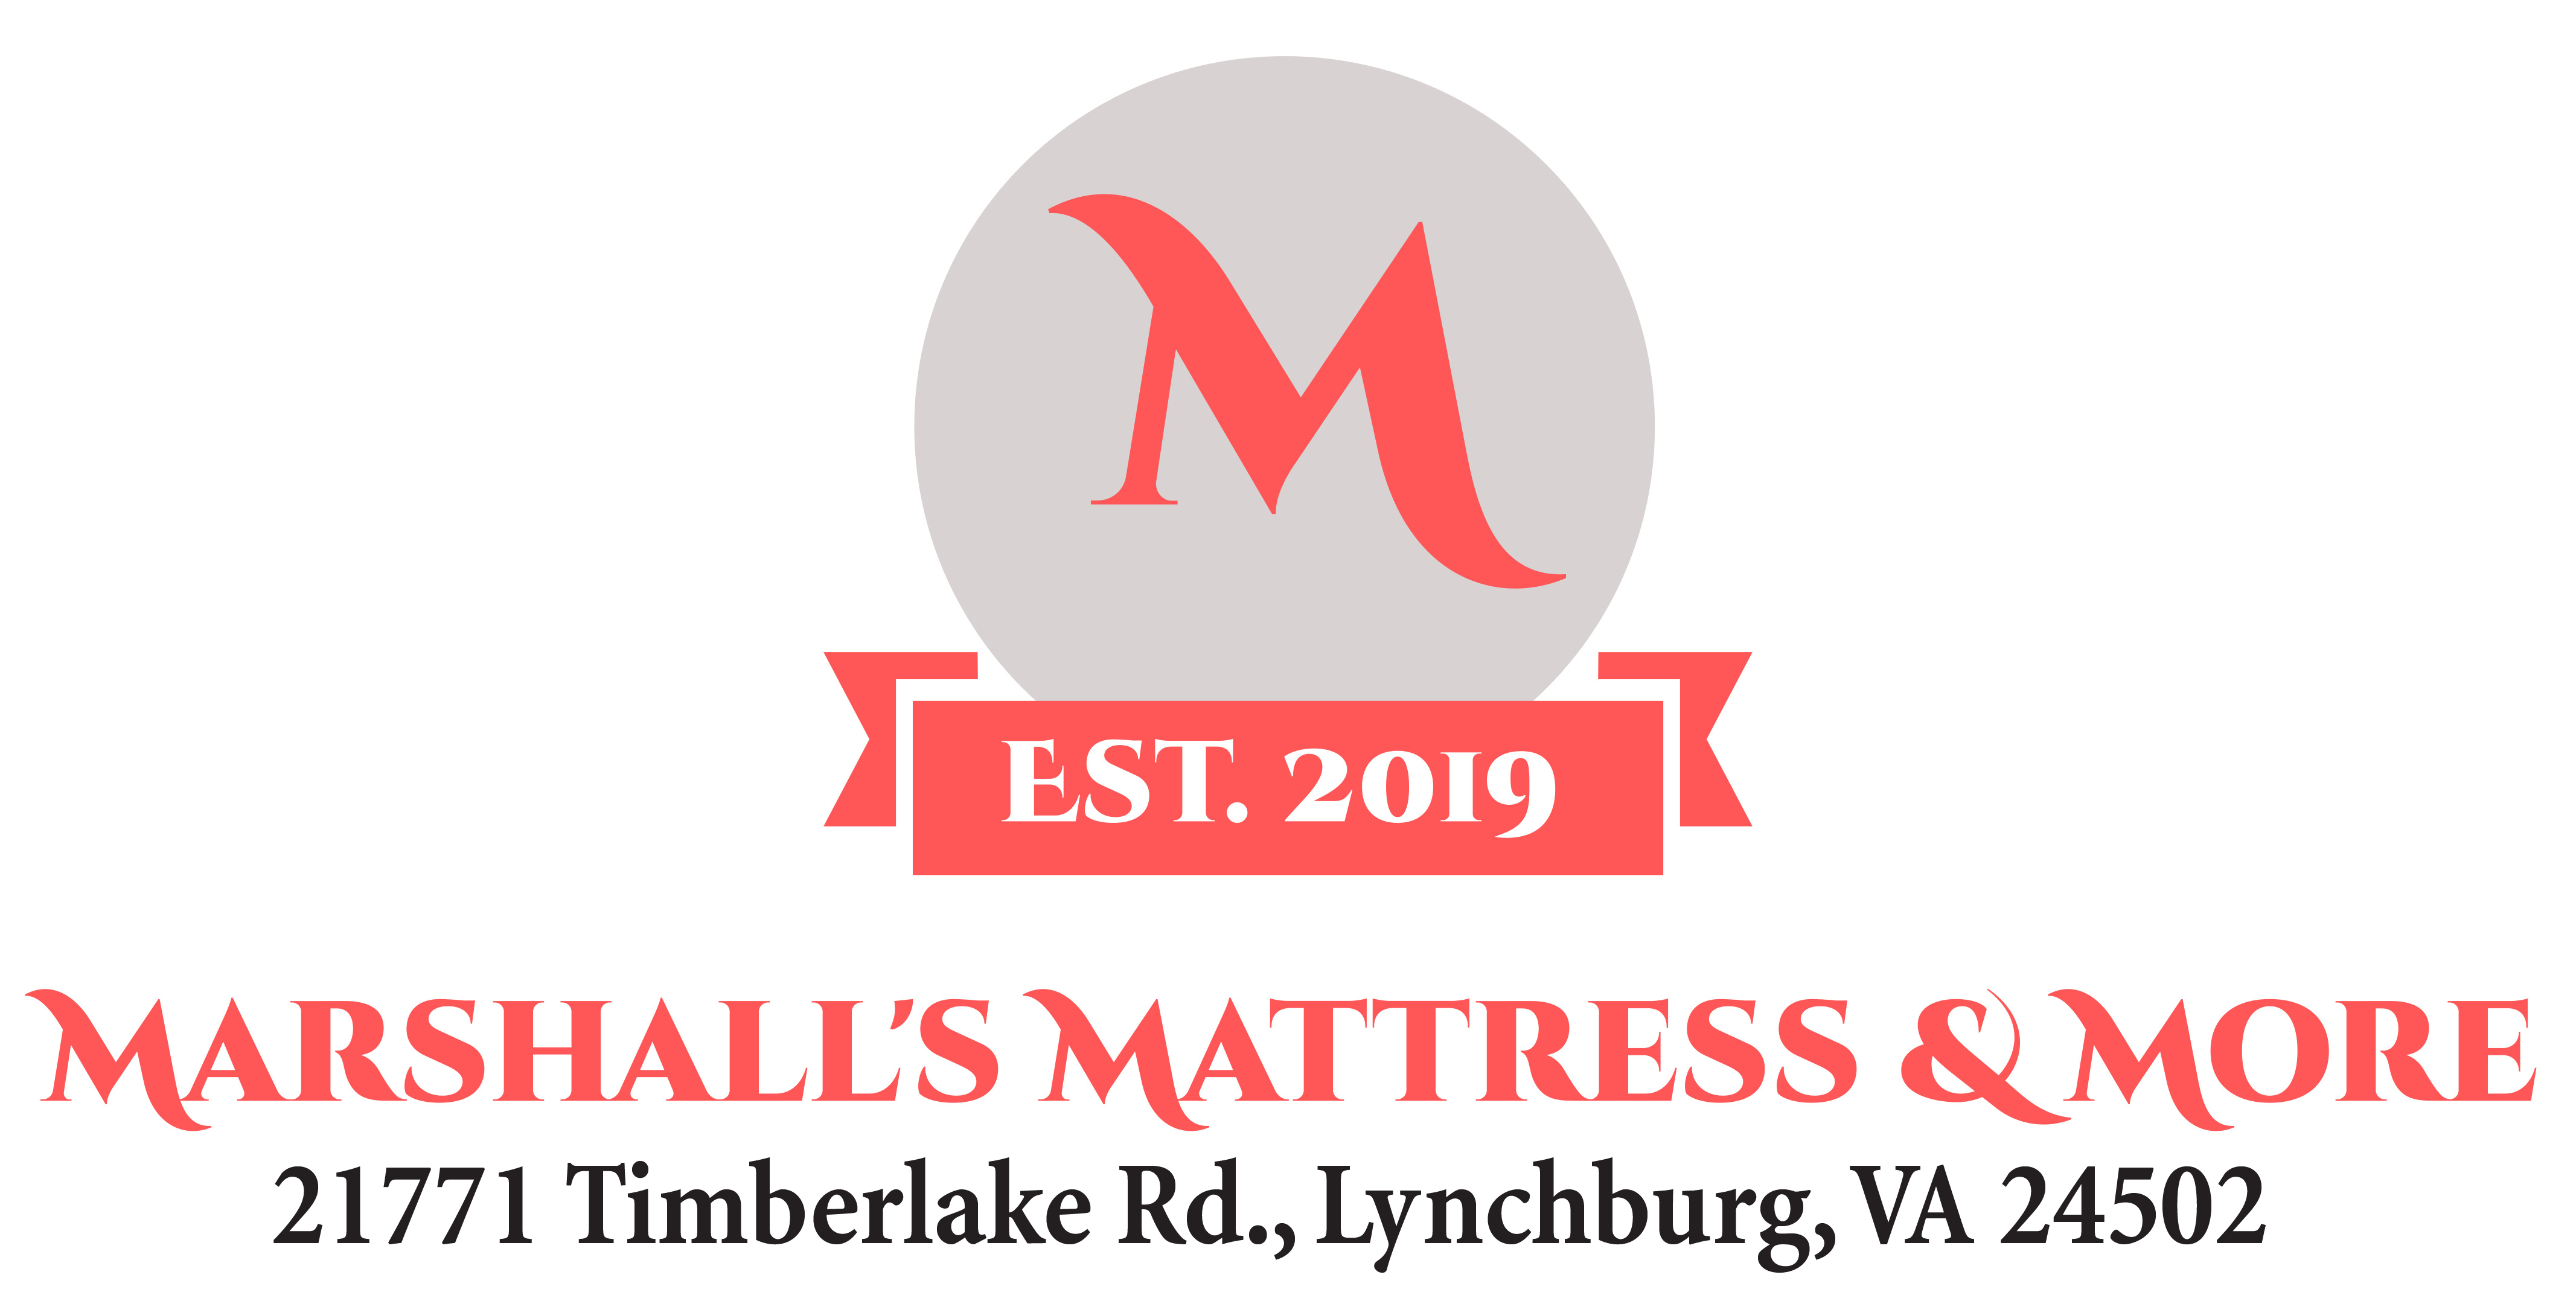 Marshall's Mattress & More